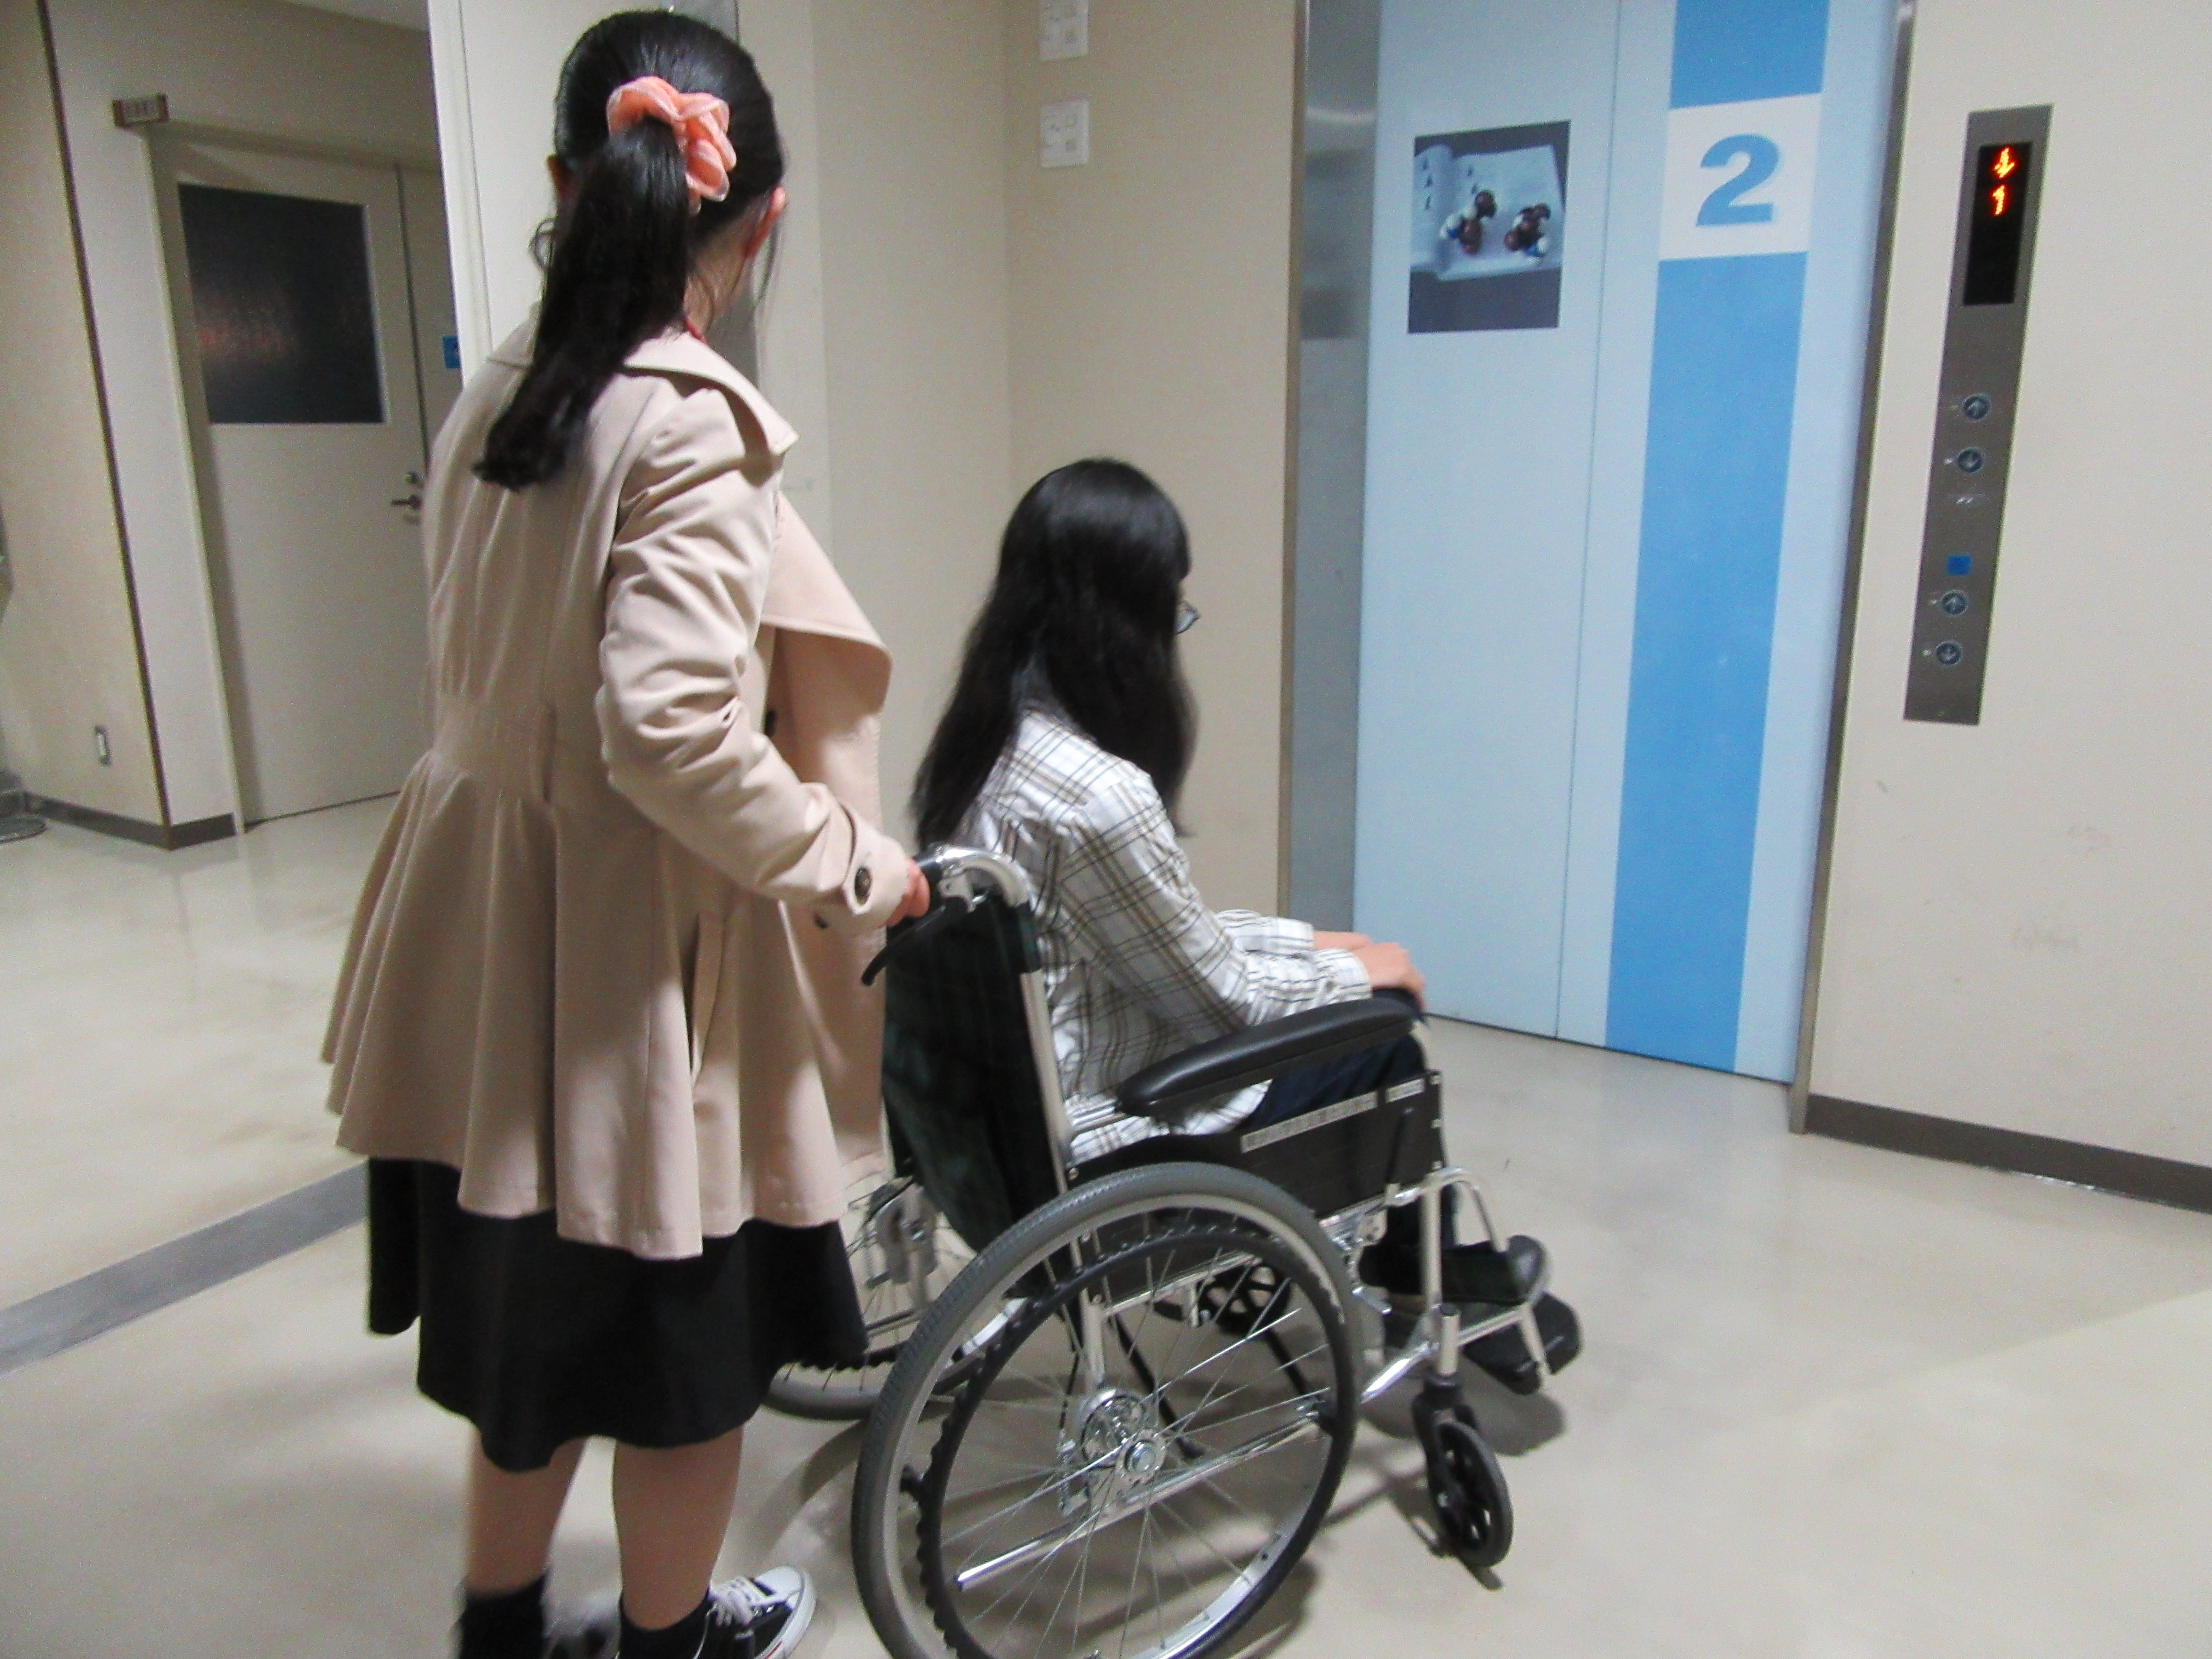 １人の受講生が車椅子に乗り、もう１人が車椅子を押す体験をしている